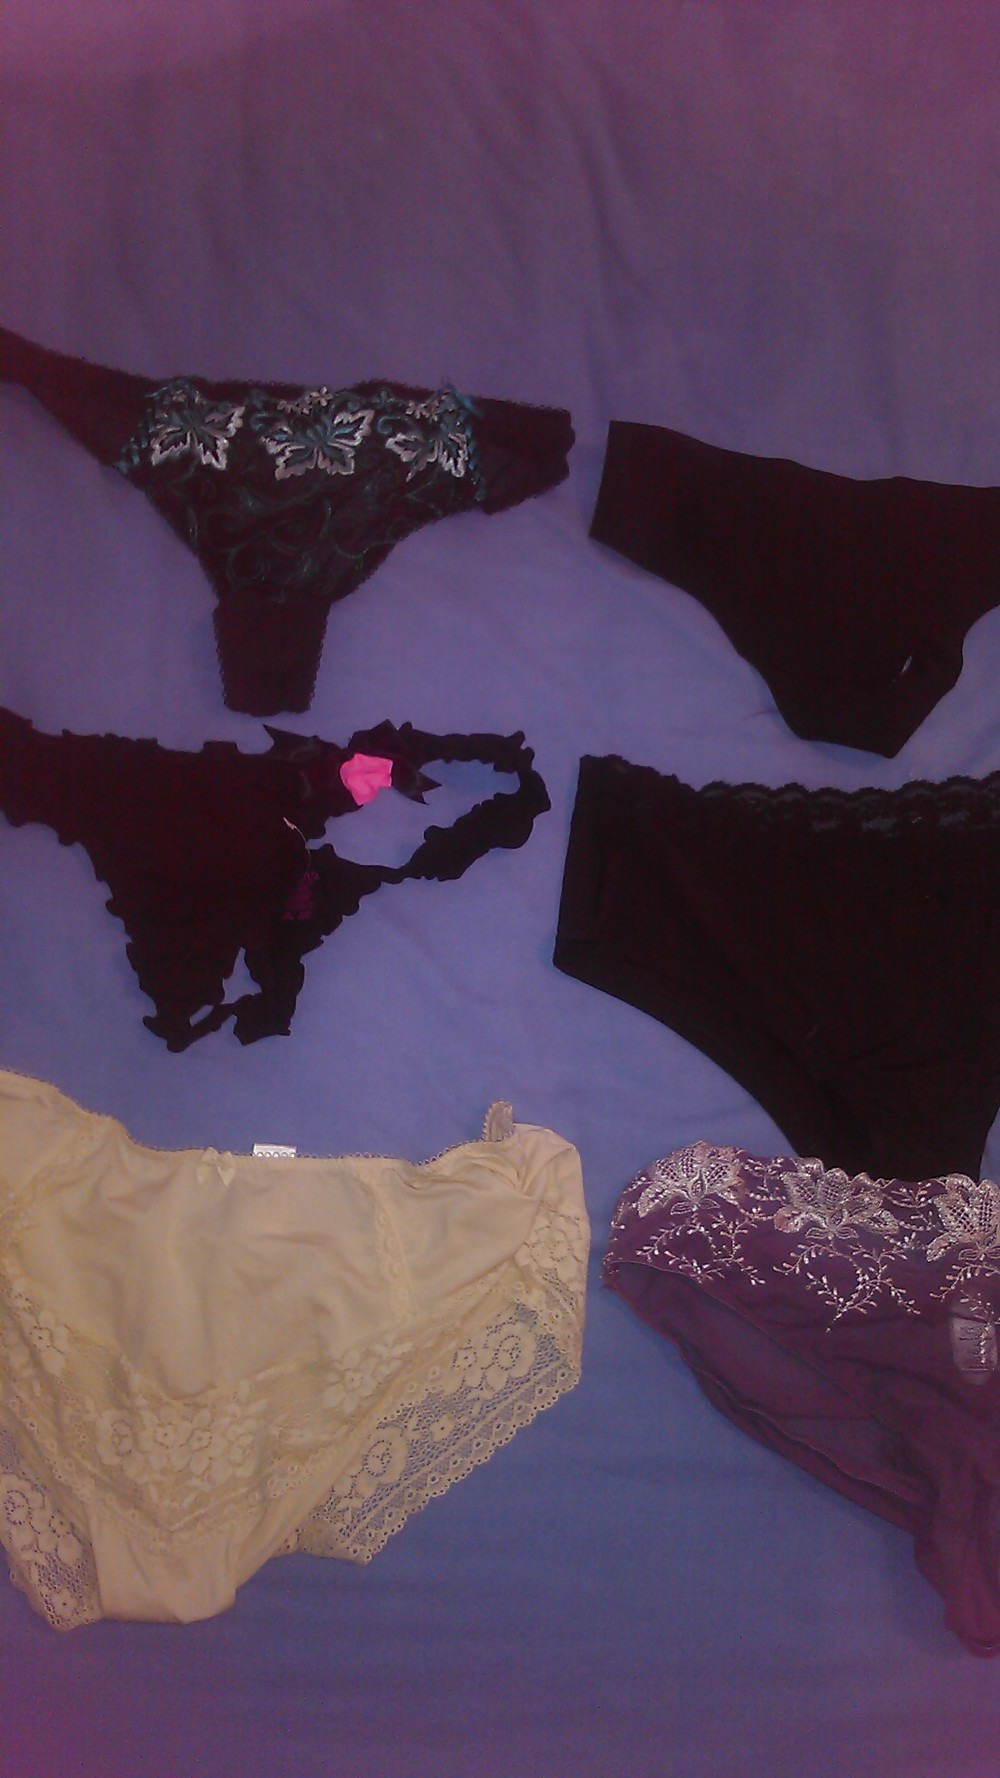 Scottish slut - panties, which ones shall i use? #12170116